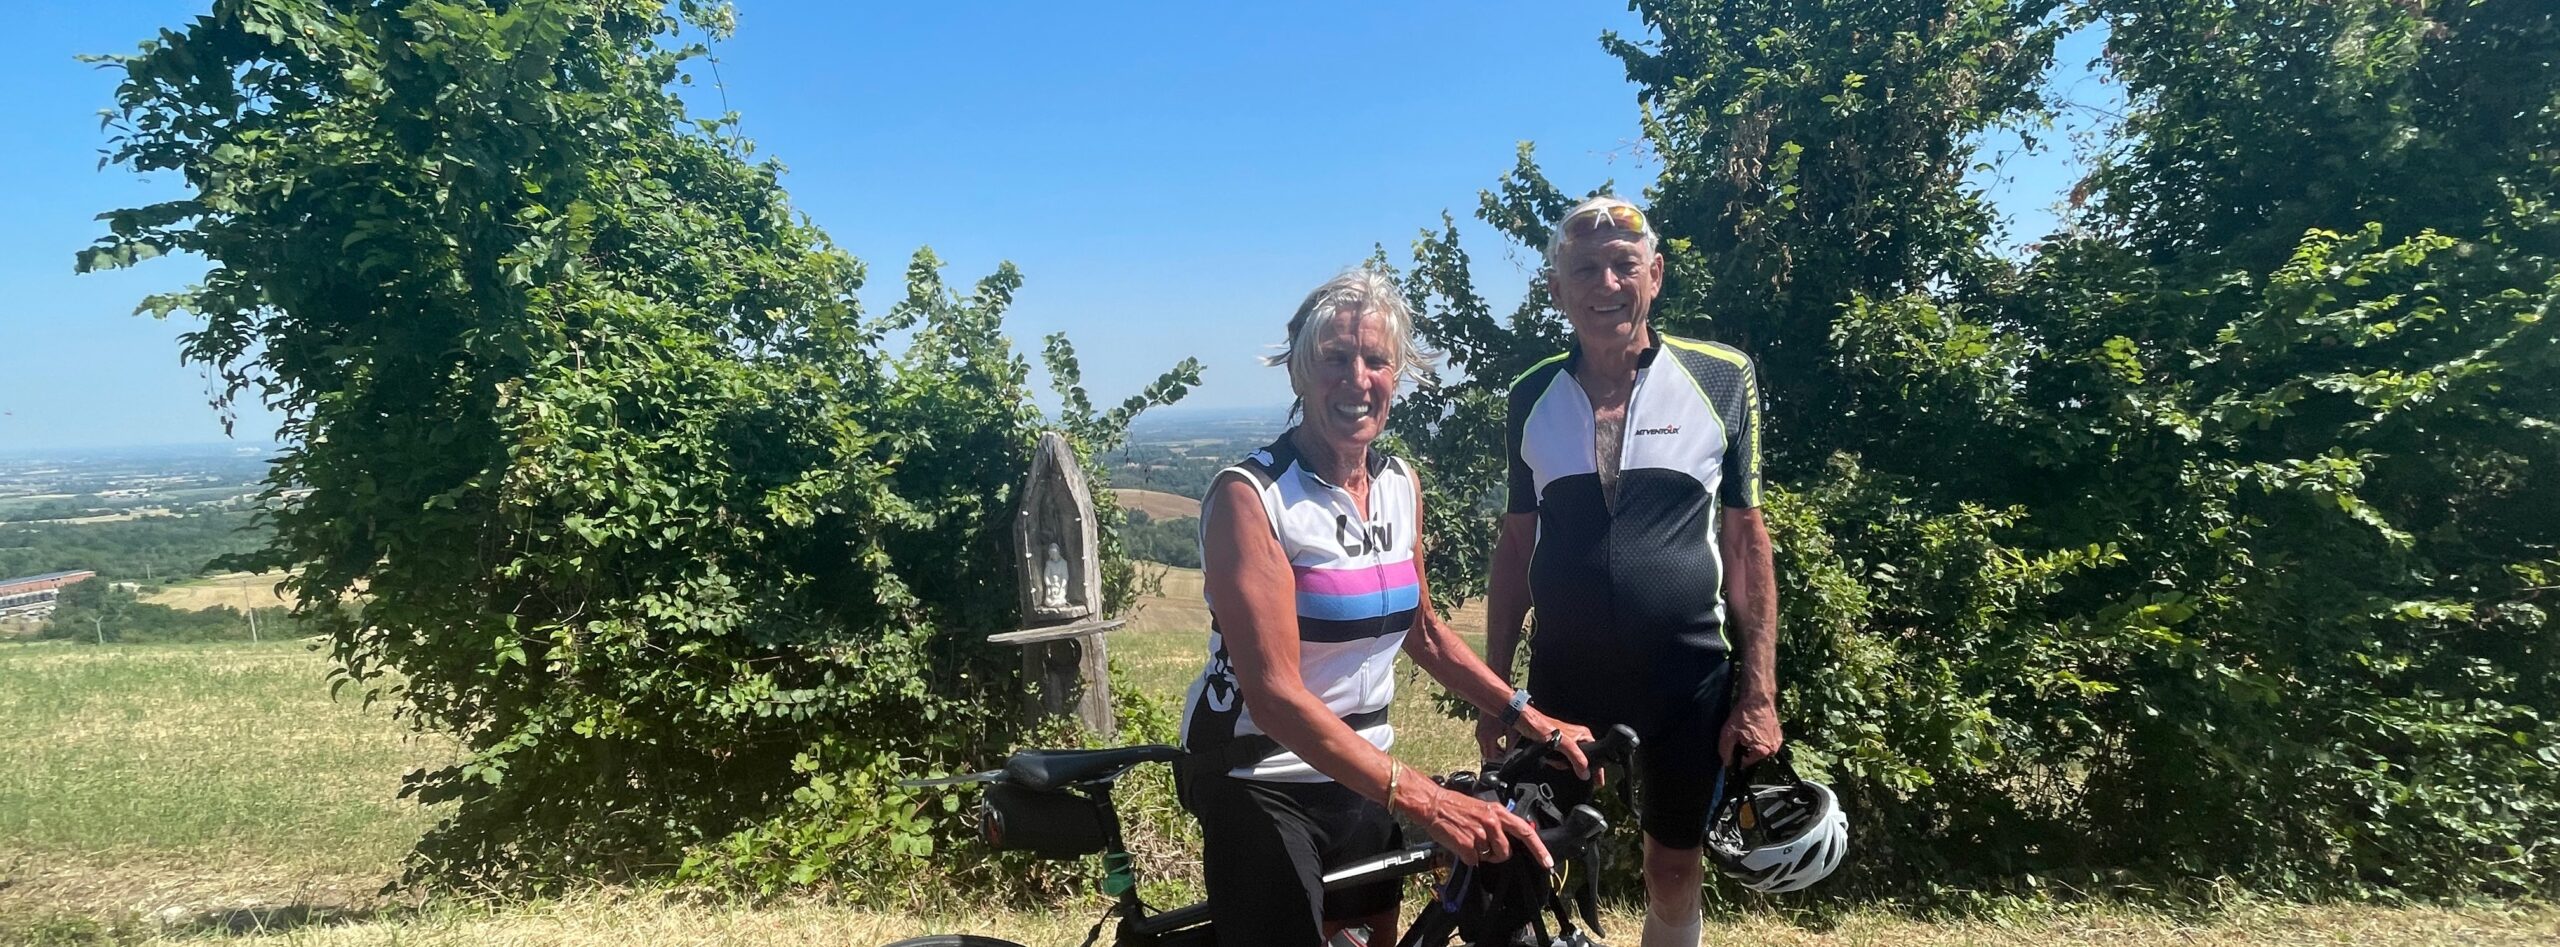 Nederlands stel in Italië op fietsvakantie tijdens op maat vakantie Rudi Rides